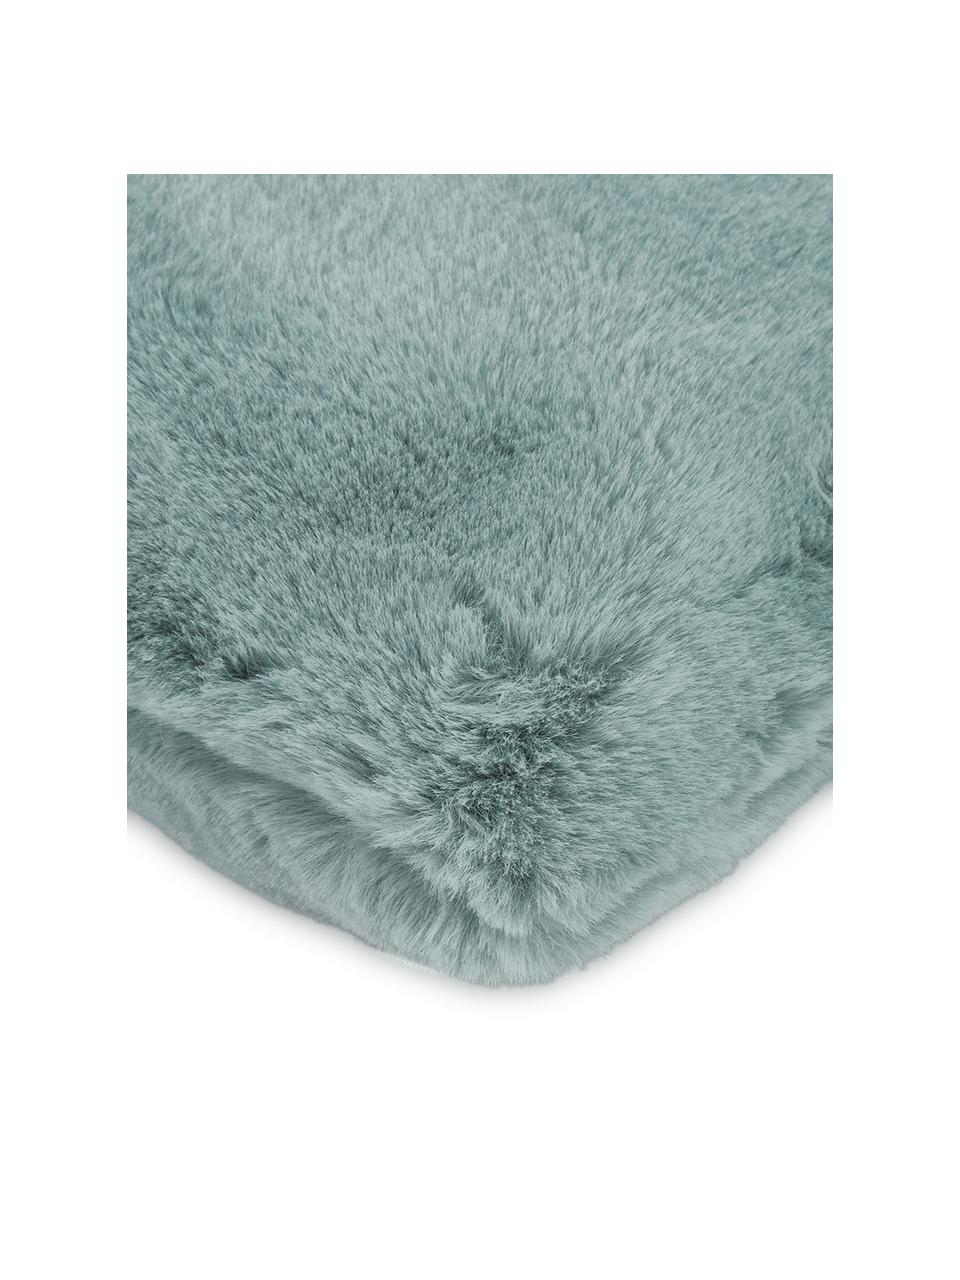 Flauschige Kunstfell-Kissenhülle Mette in Salbeigrün, glatt, Vorderseite: 100% Polyester, Rückseite: 100% Polyester, Grün, 30 x 50 cm